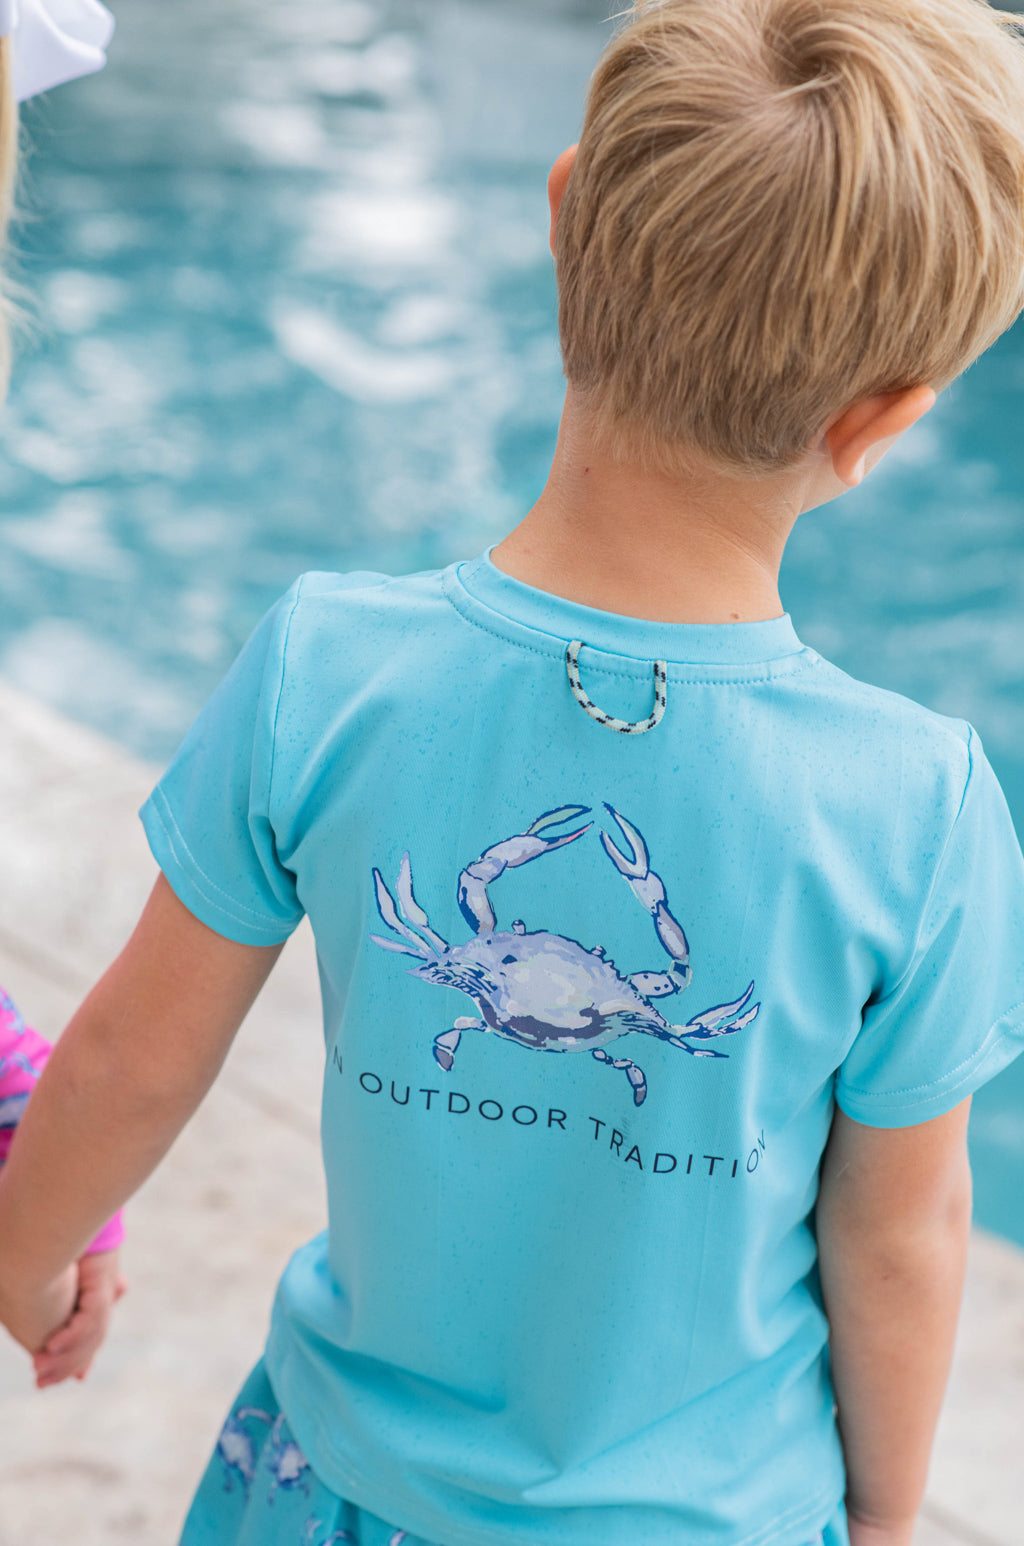 Boys UV Performance Fishing Shirts, Polos, Tees